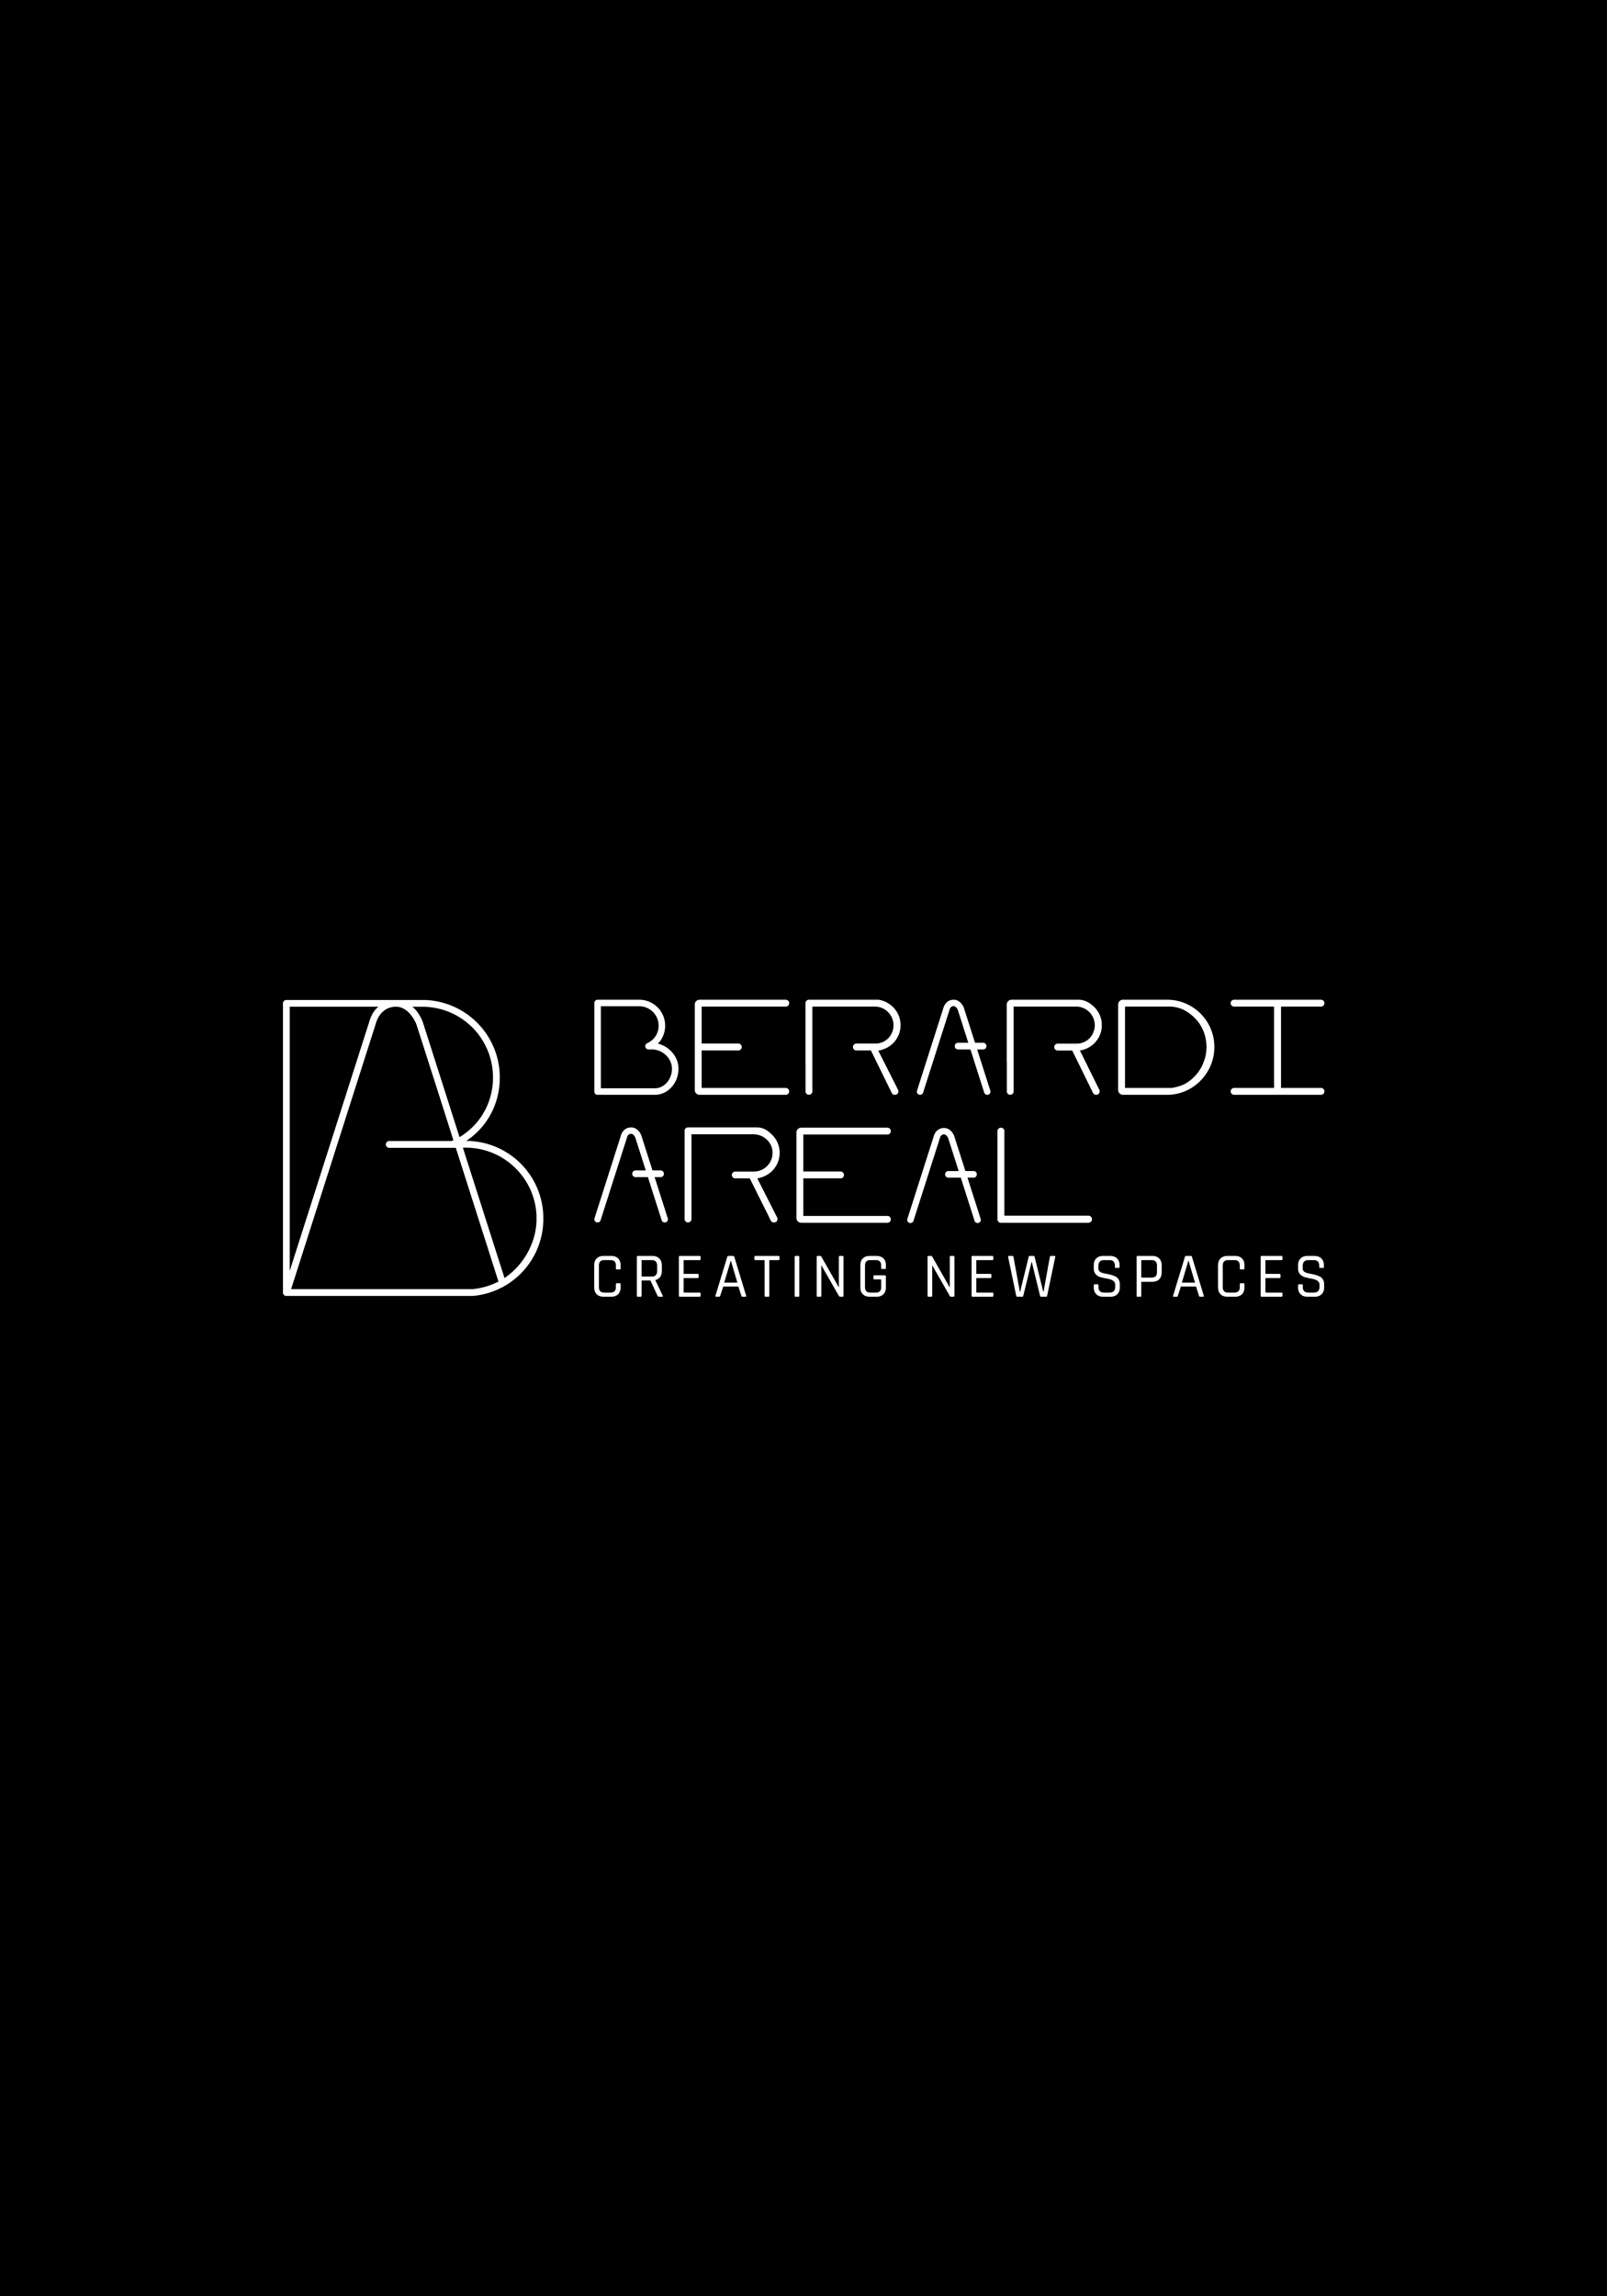 Das Logo des Berardi Areals, welches durch ein Logodesign für kleine Unternehmen entwickelt wurde.